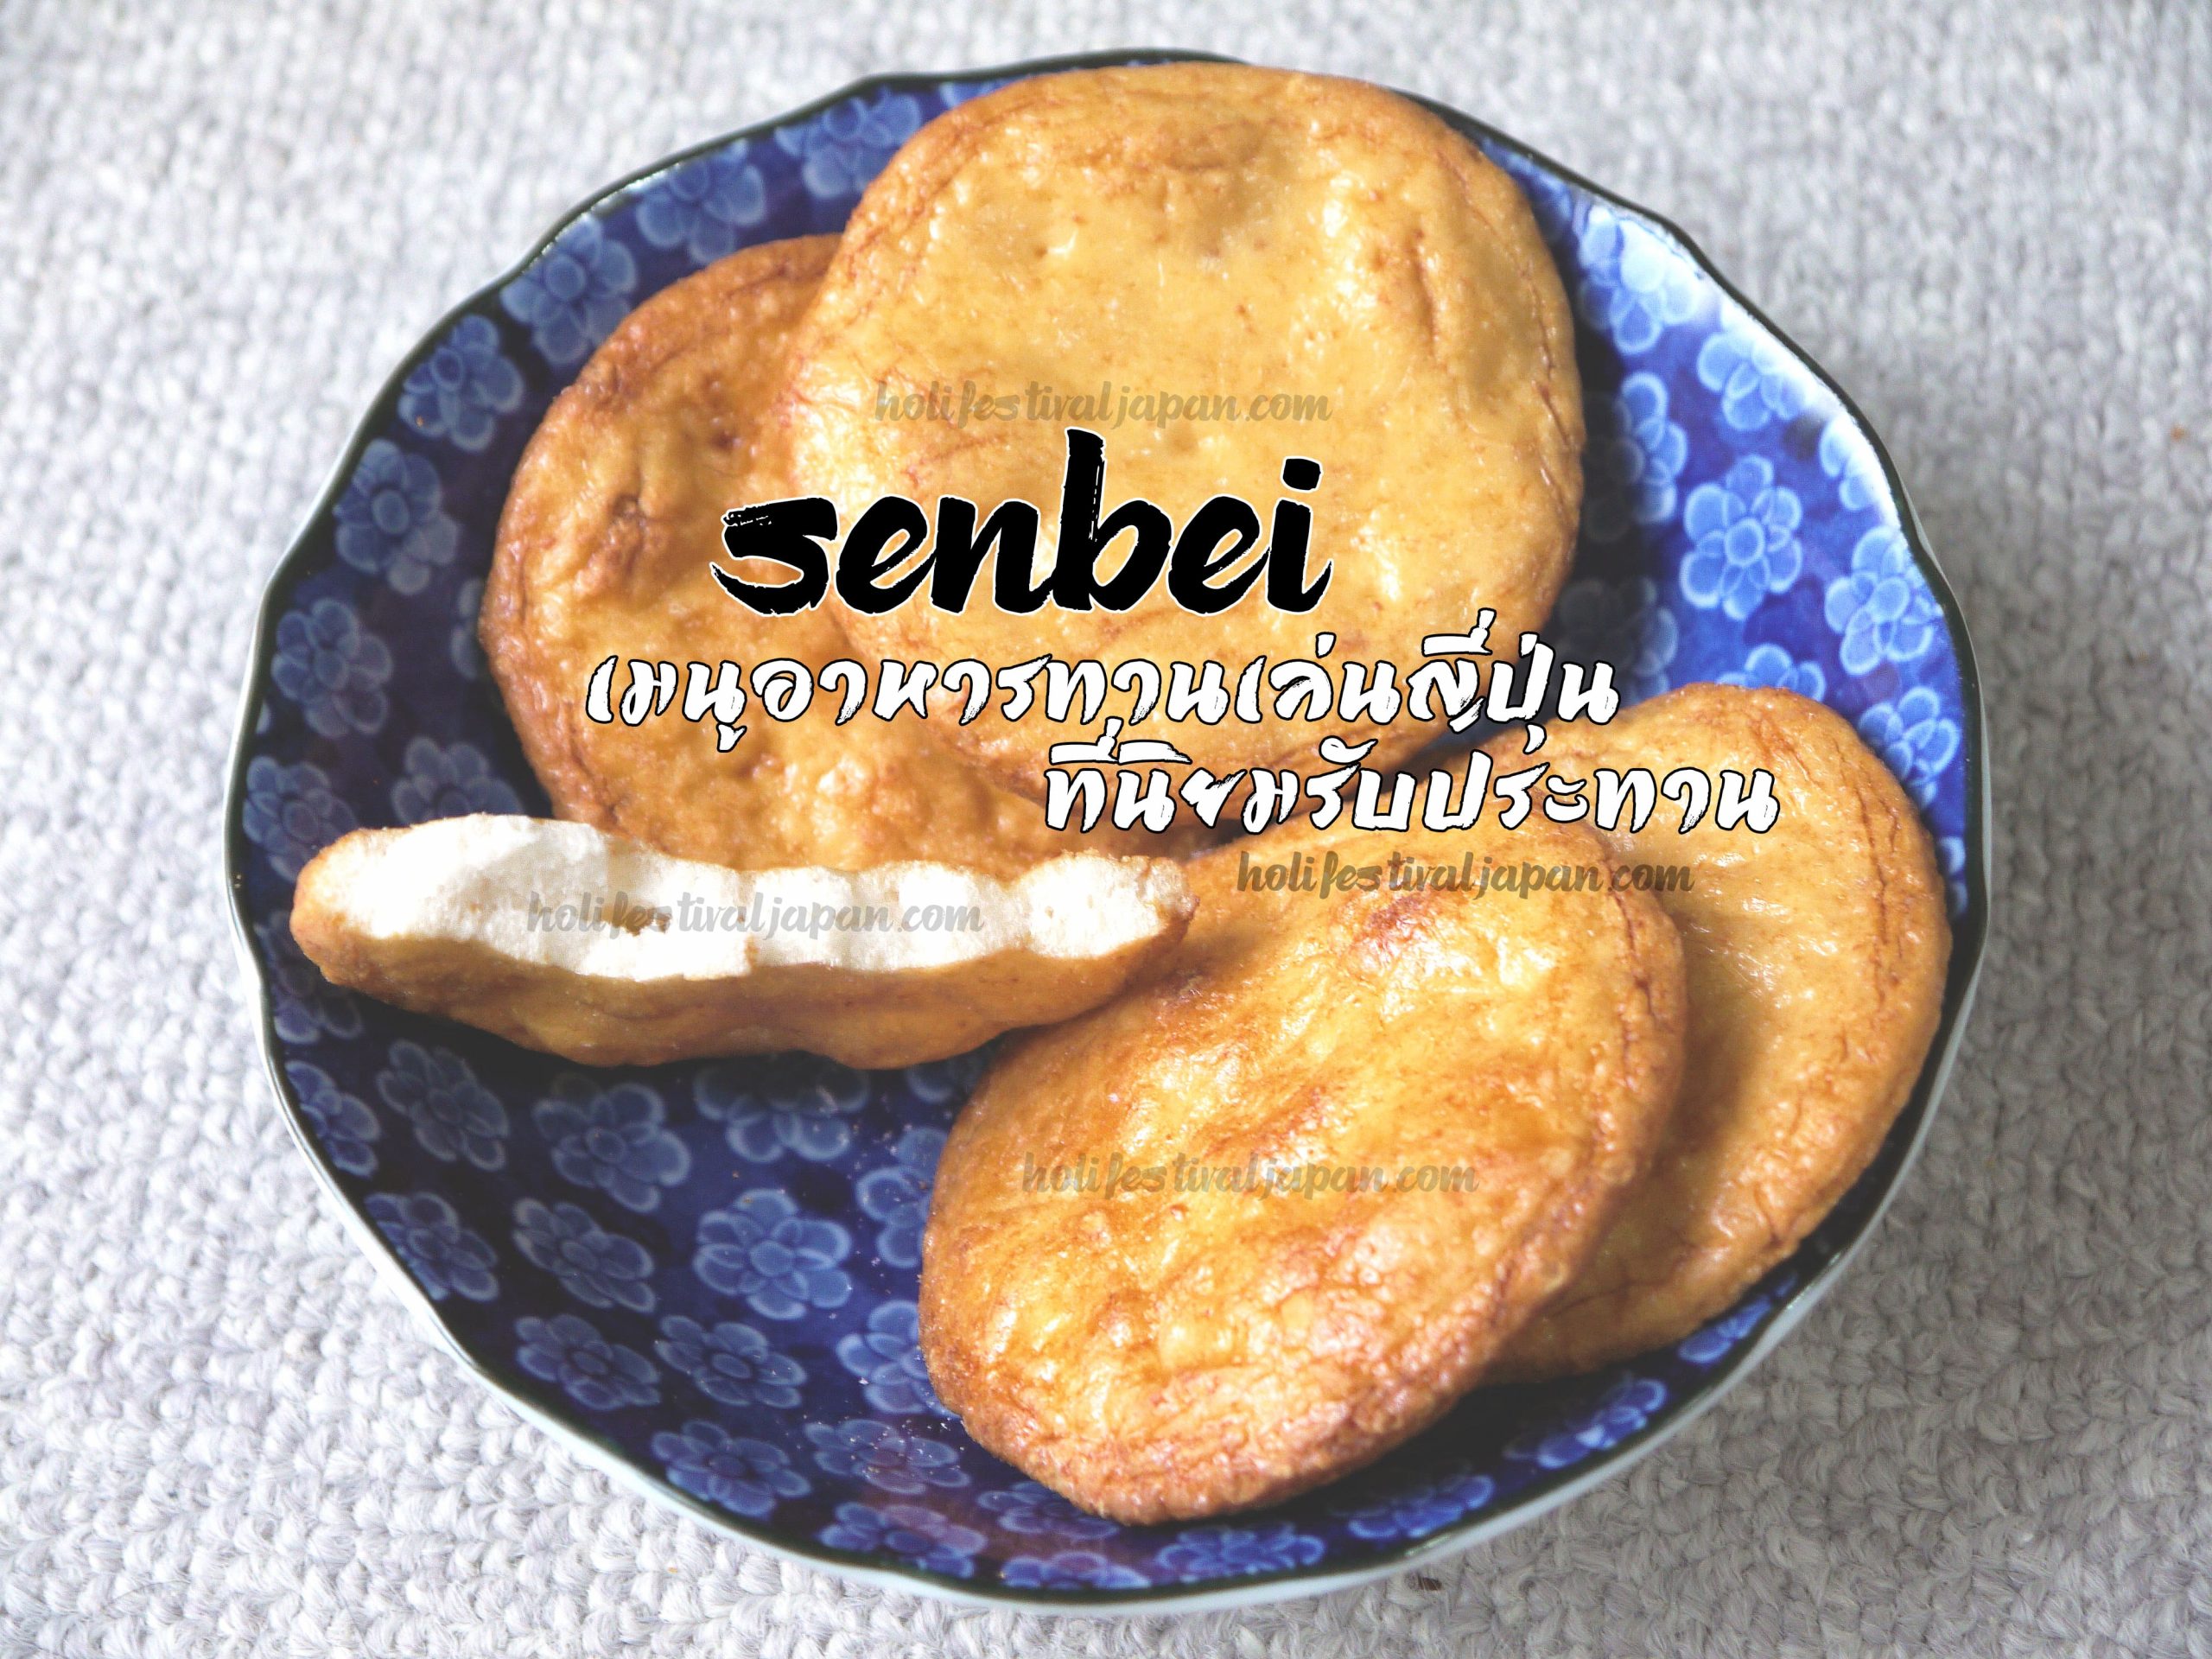 Senbei อาหารญี่ปุ่นทานเพื่อคลายความหิว หรือจะซื้อเป็นของฝาก